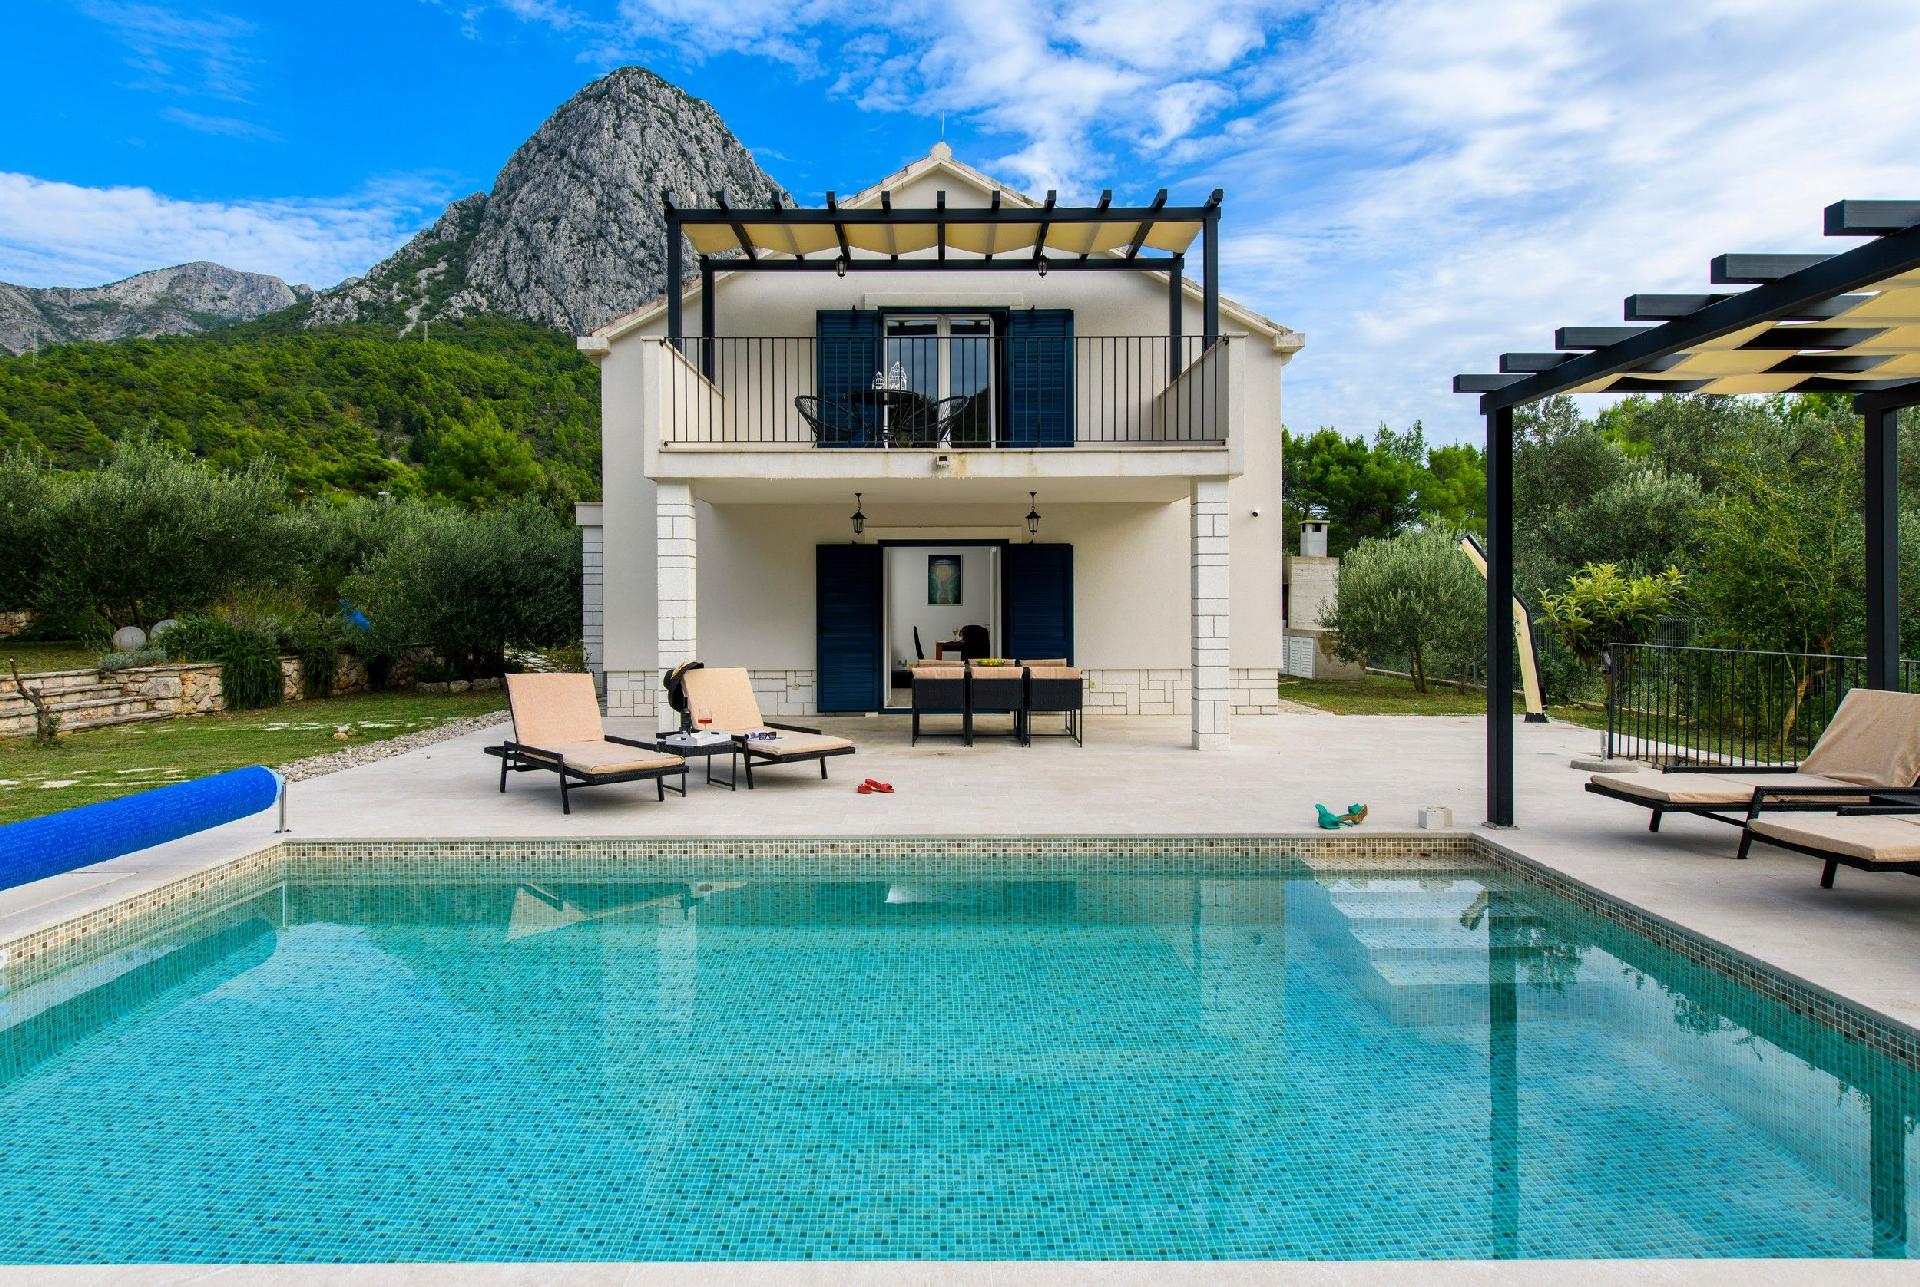 Alleinstehendes Ferienhaus mit Pool und drei Schla Ferienhaus in Dalmatien